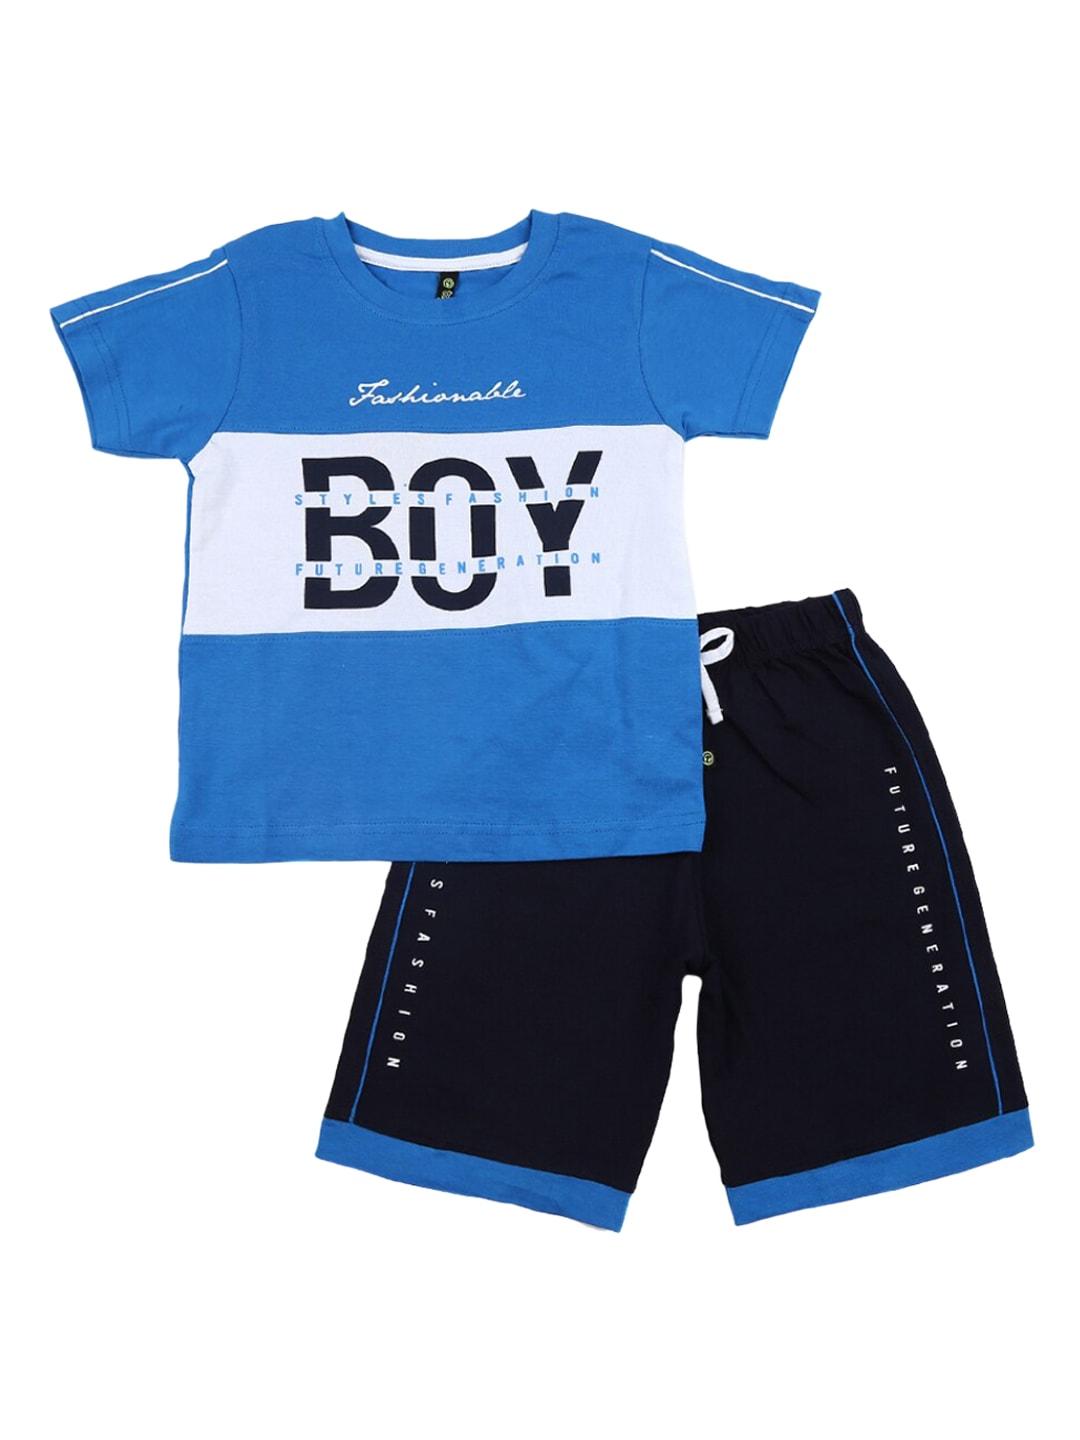 V-Mart Unisex Kids Blue Clothing Set